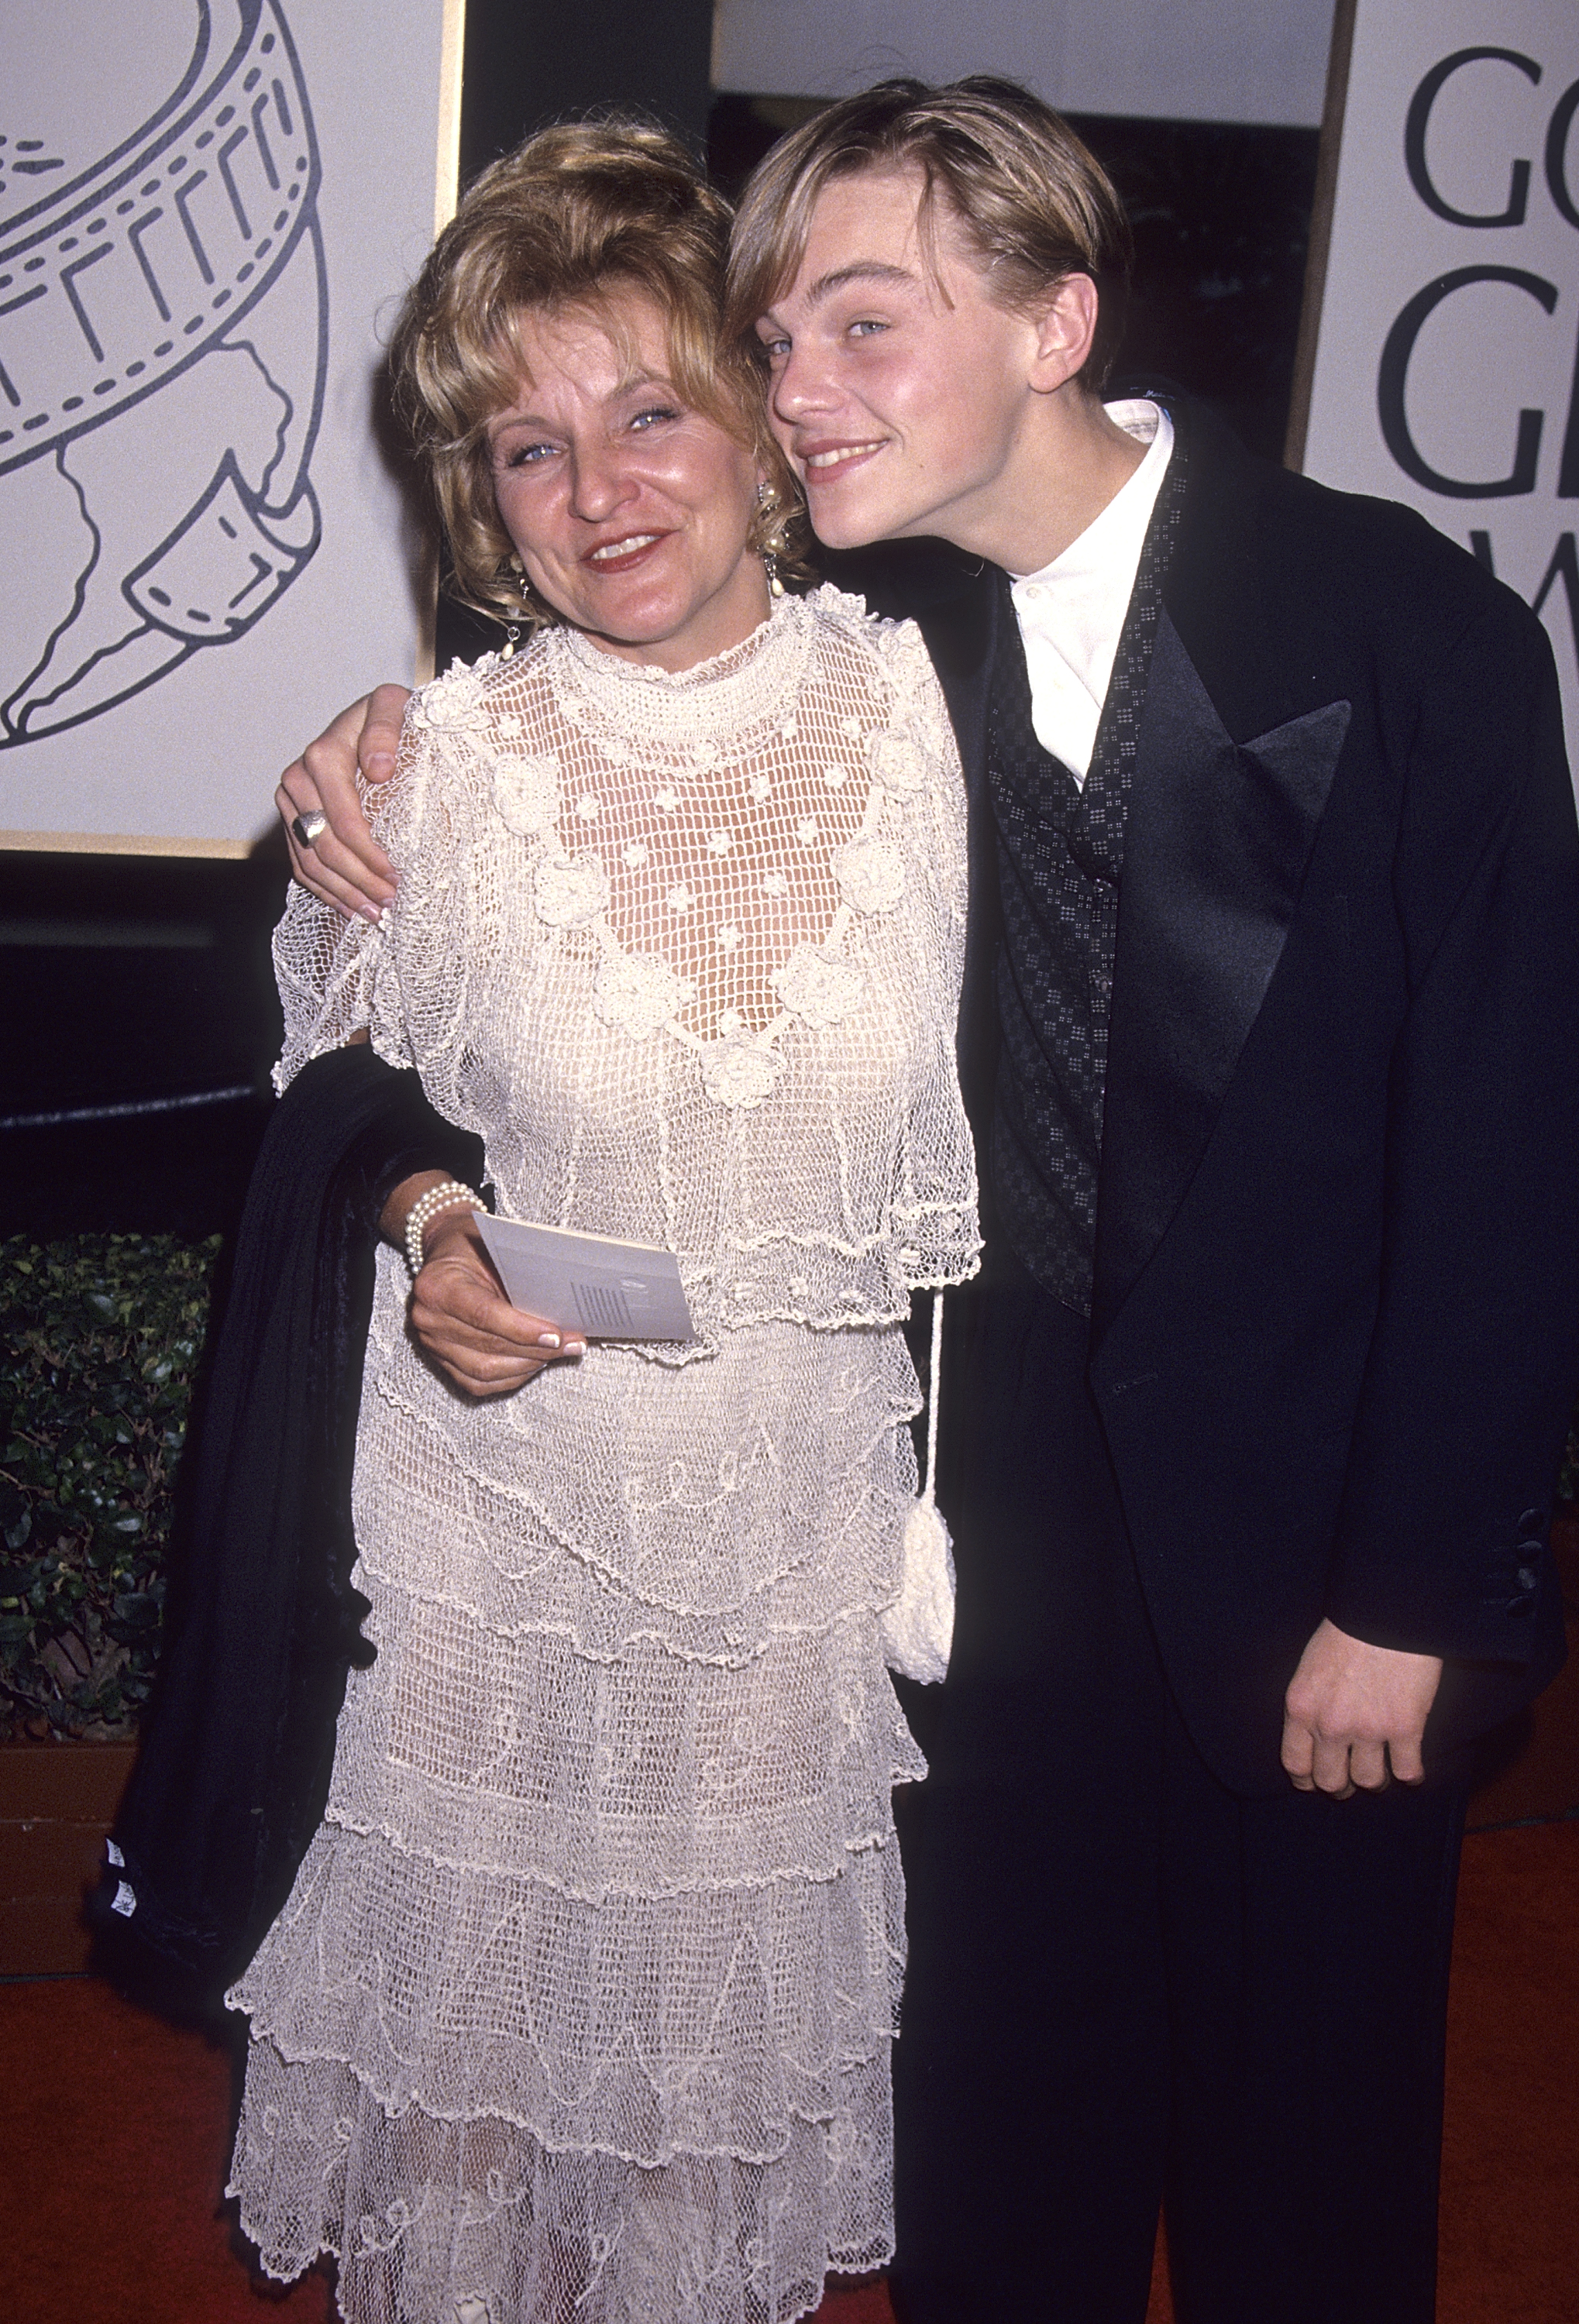 Irmelin Indenbirken et Leonardo DiCaprio assistent à la 51e cérémonie annuelle des Golden Globe Awards à Beverly Hills, Californie, le 22 janvier 1994. | Source : Getty Images